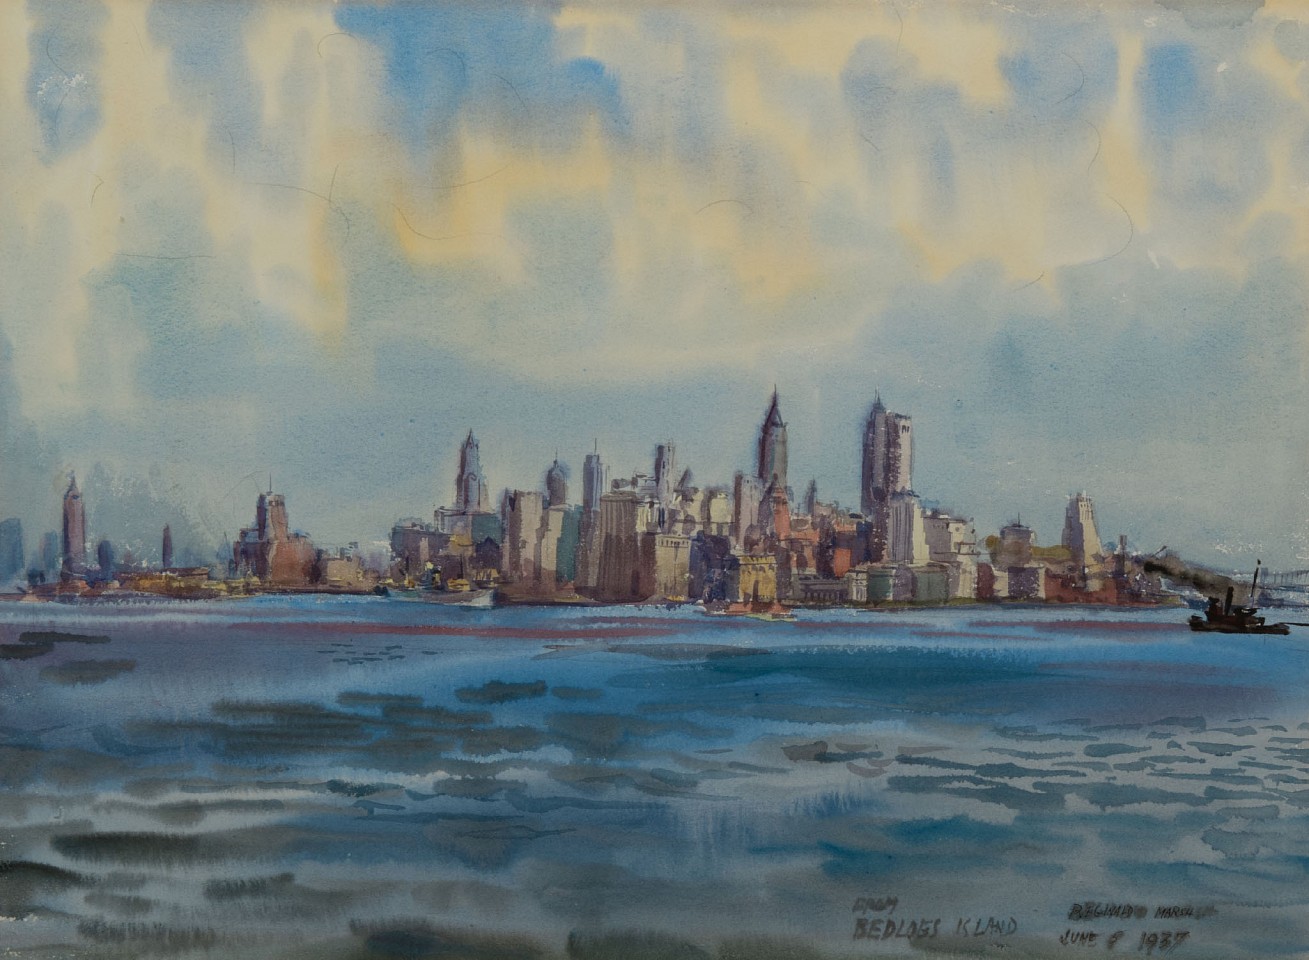 Reginald Marsh, New York from Bedloe's Island, 1937
watercolor on paper, 22 x 30 1/2 in. (55.9 x 77.5 cm)
RM1808001